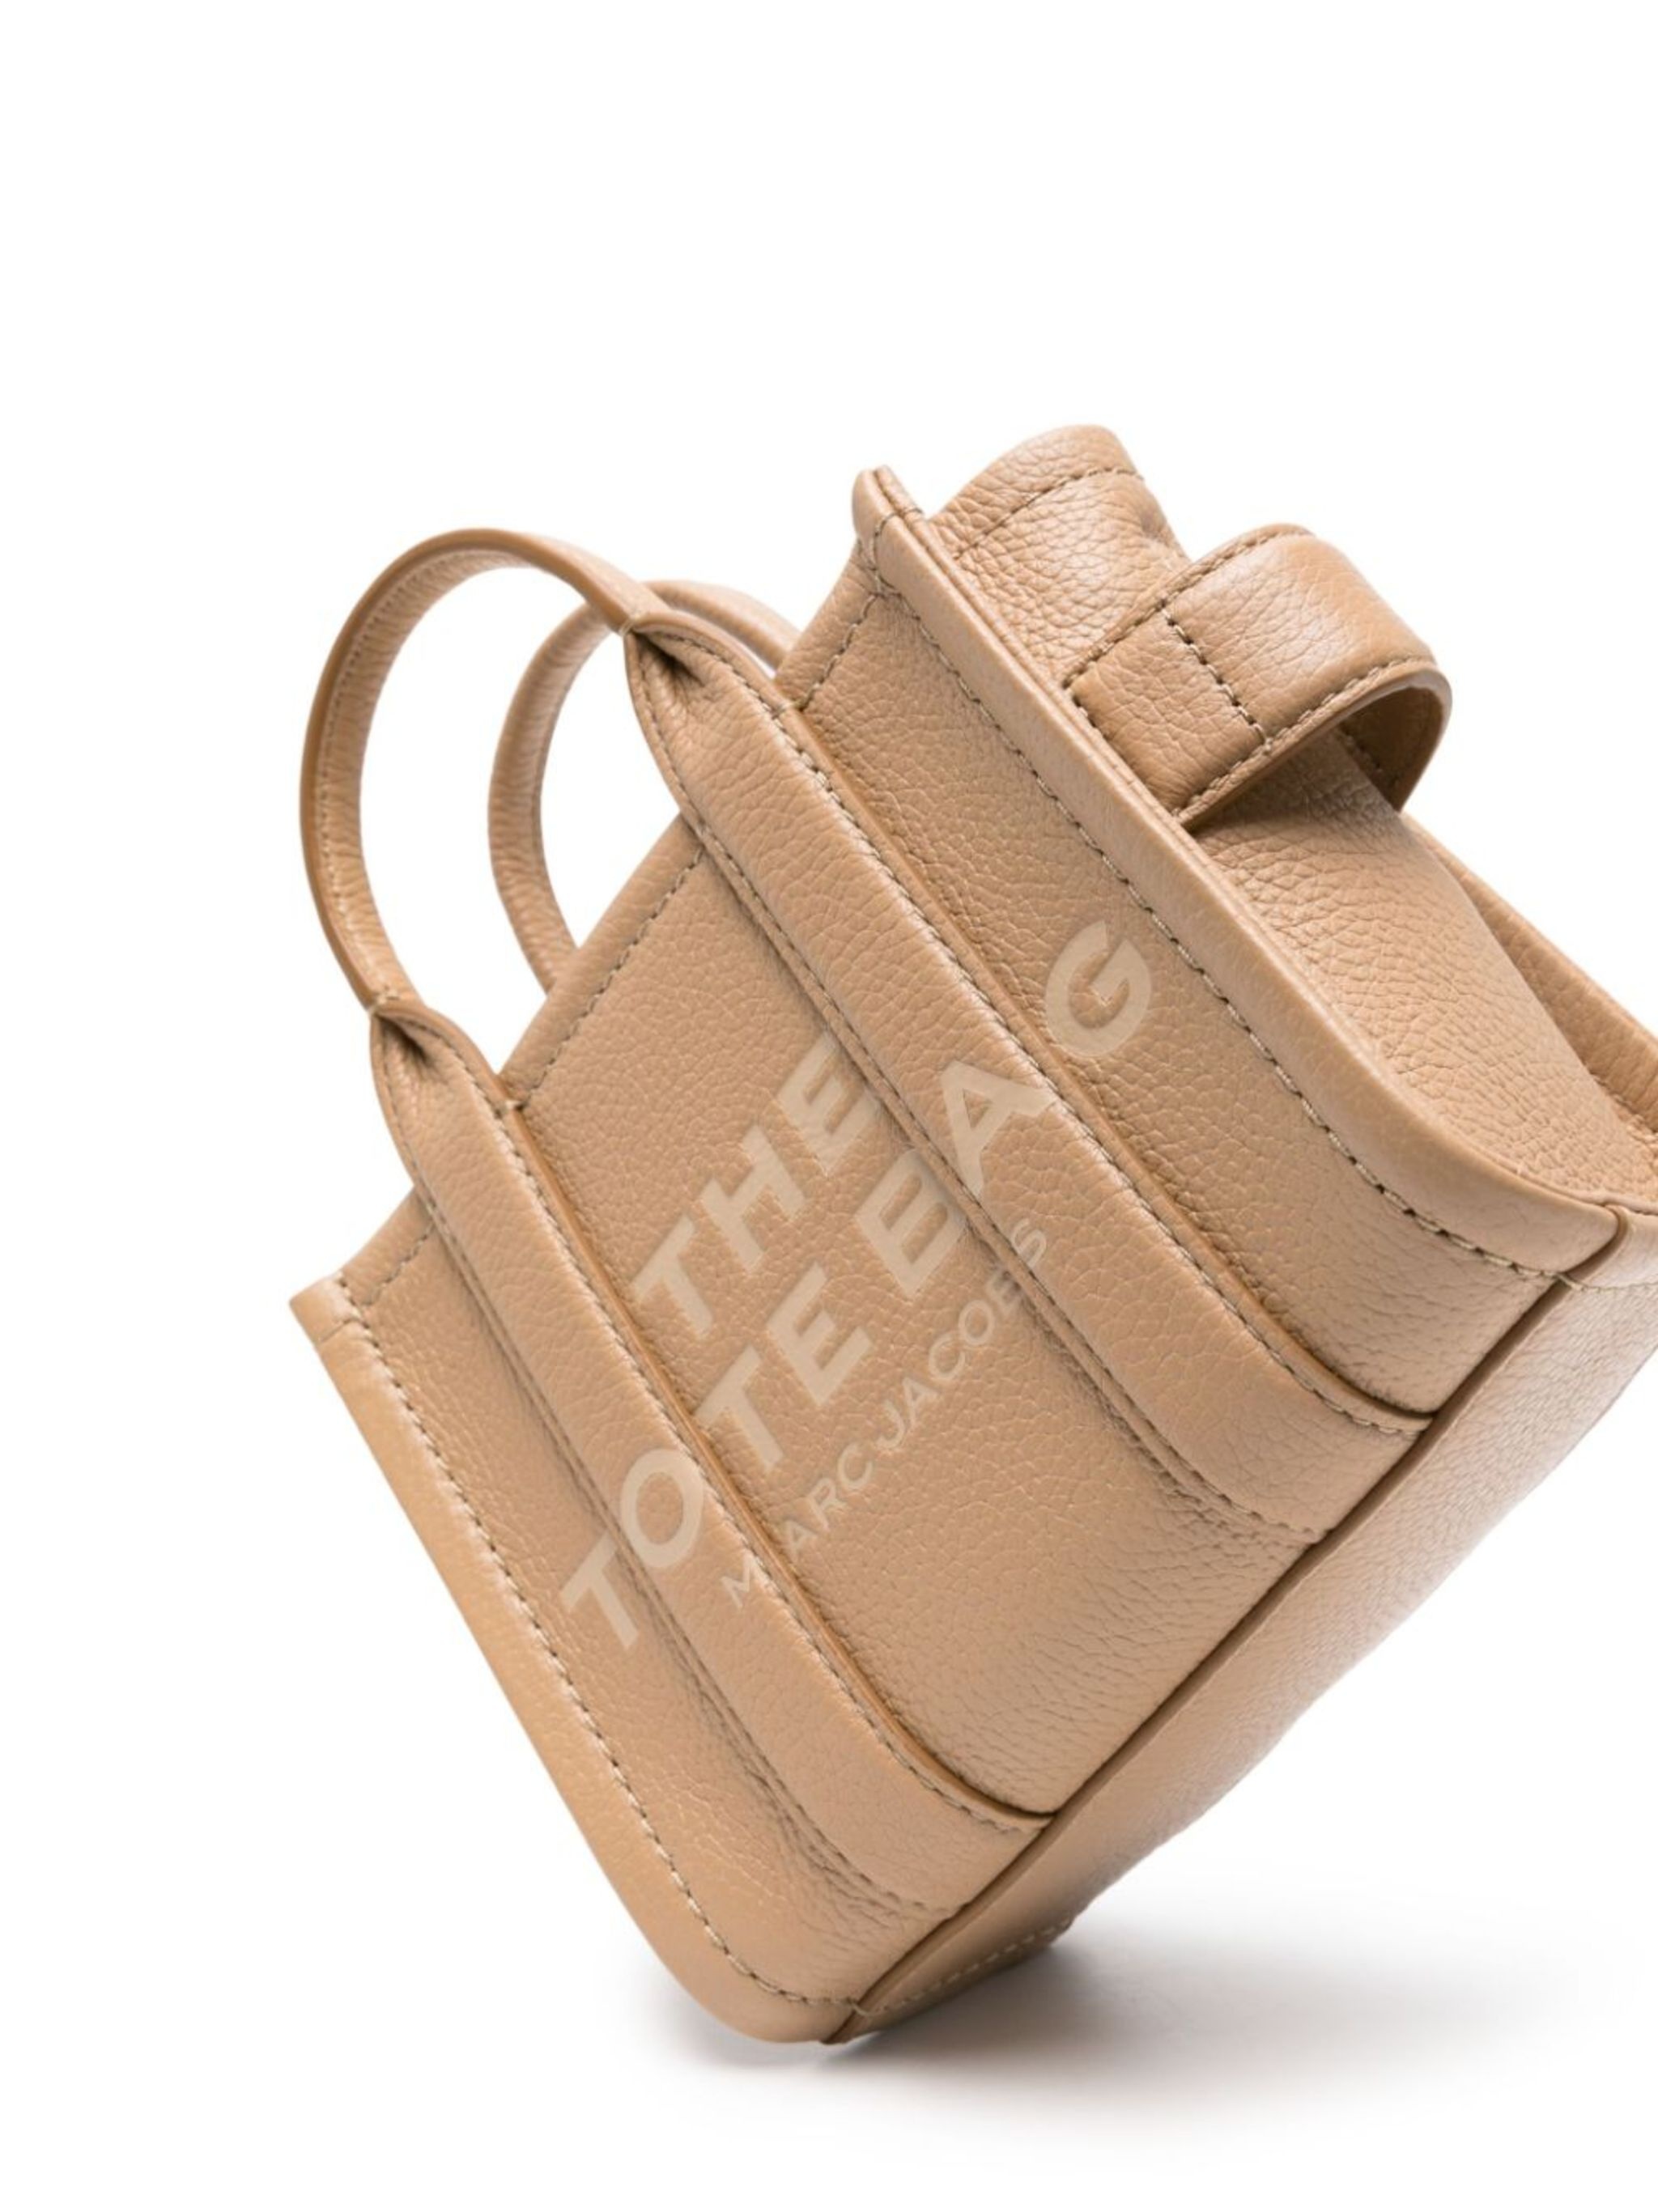 The Mini leather tote bag - 4